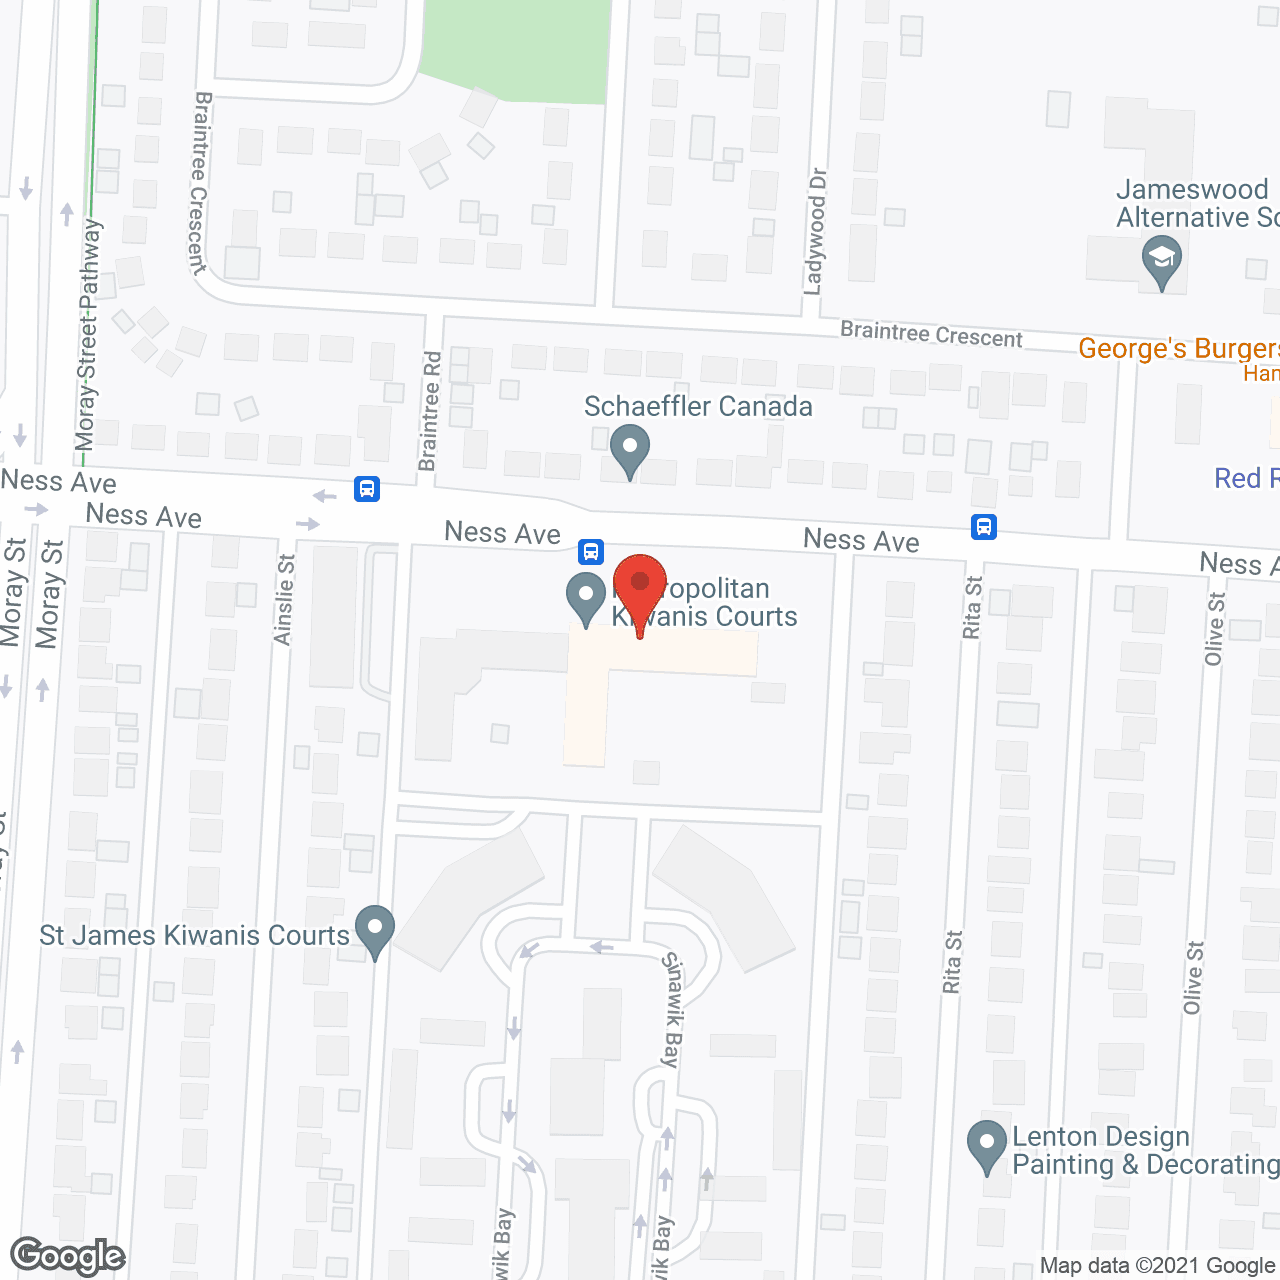 Metropolitan Kiwanis Courts in google map